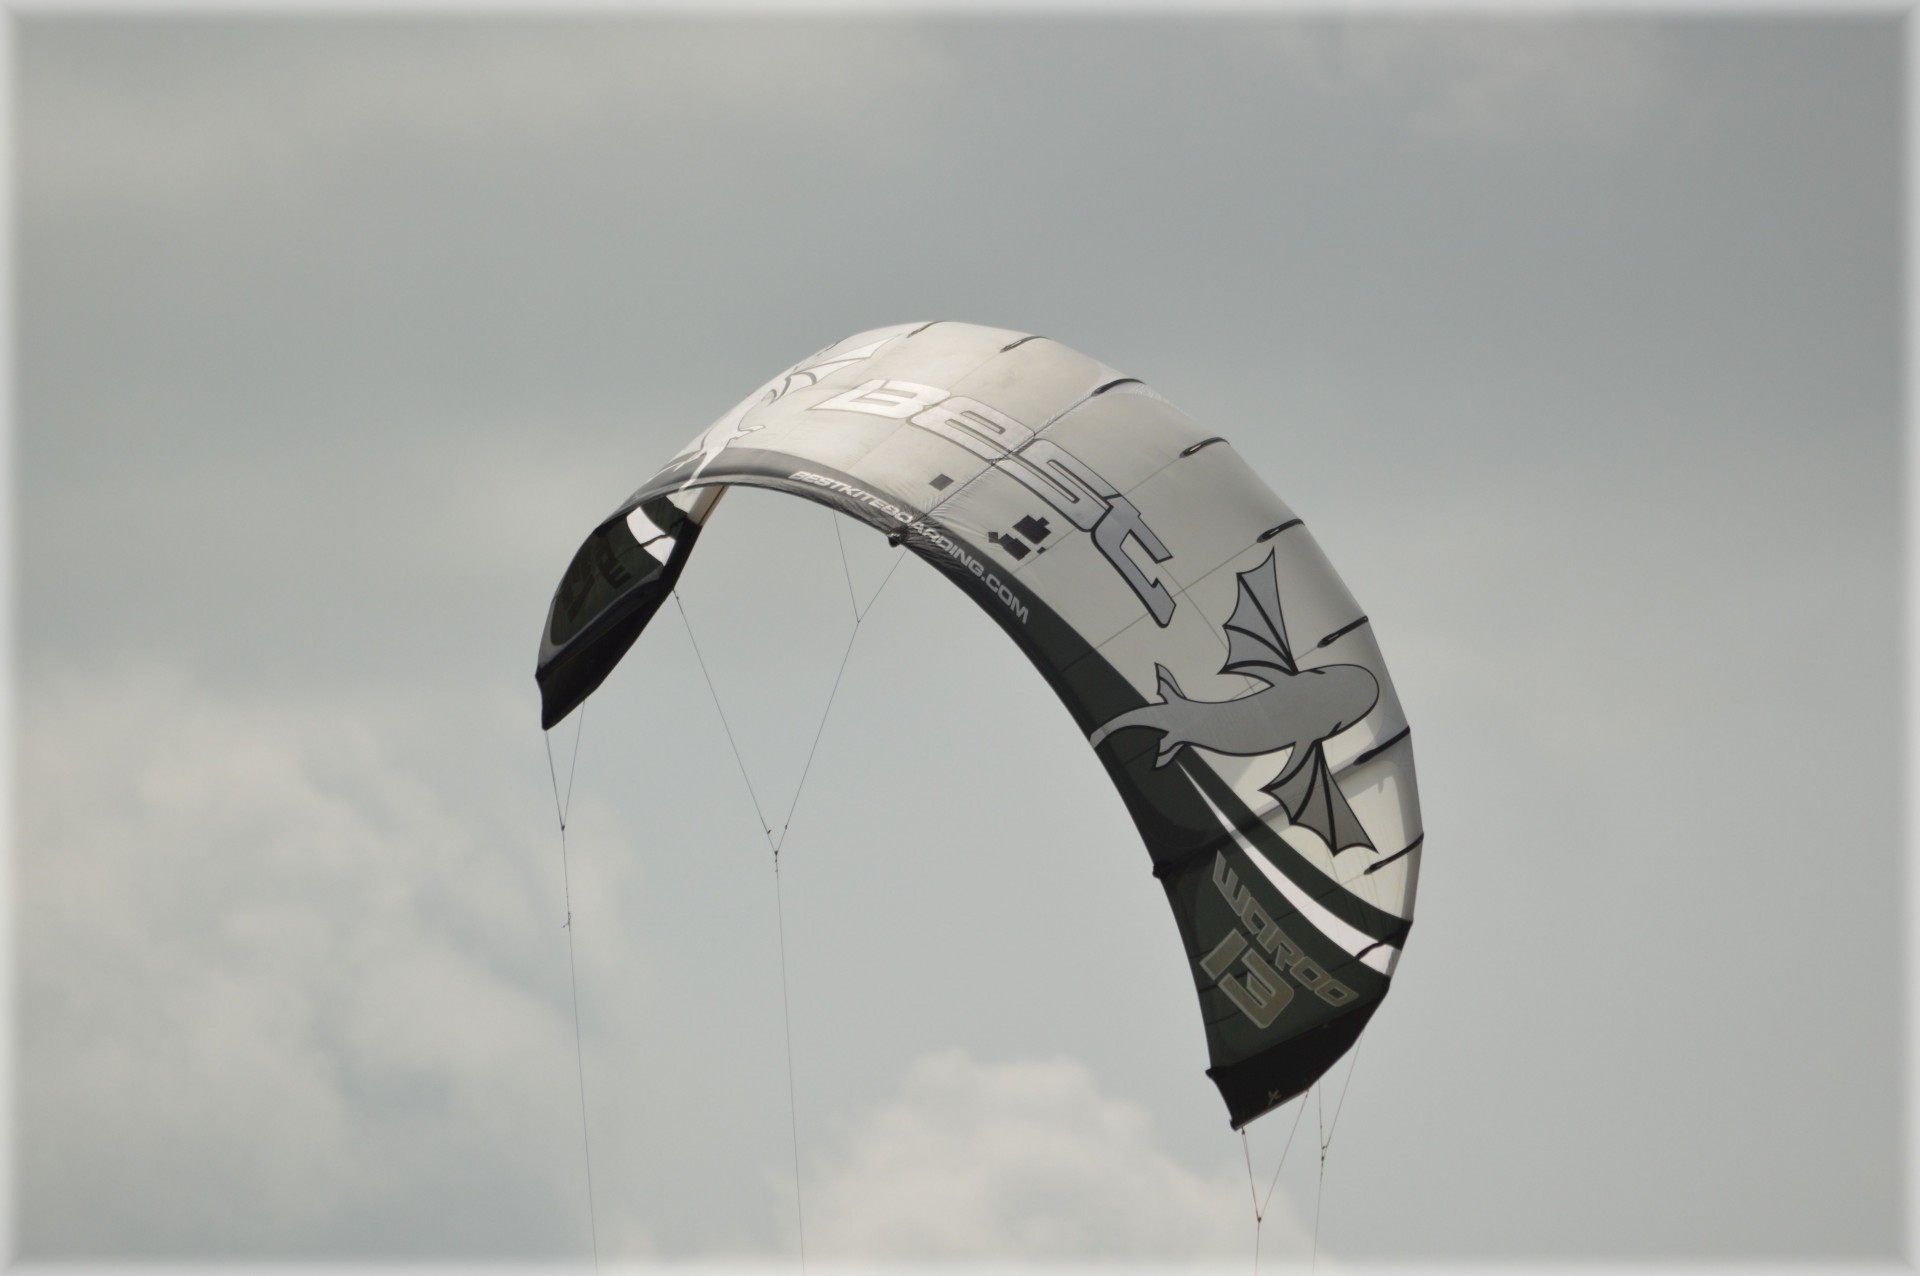 wind kite surfing kitesurfing free photo